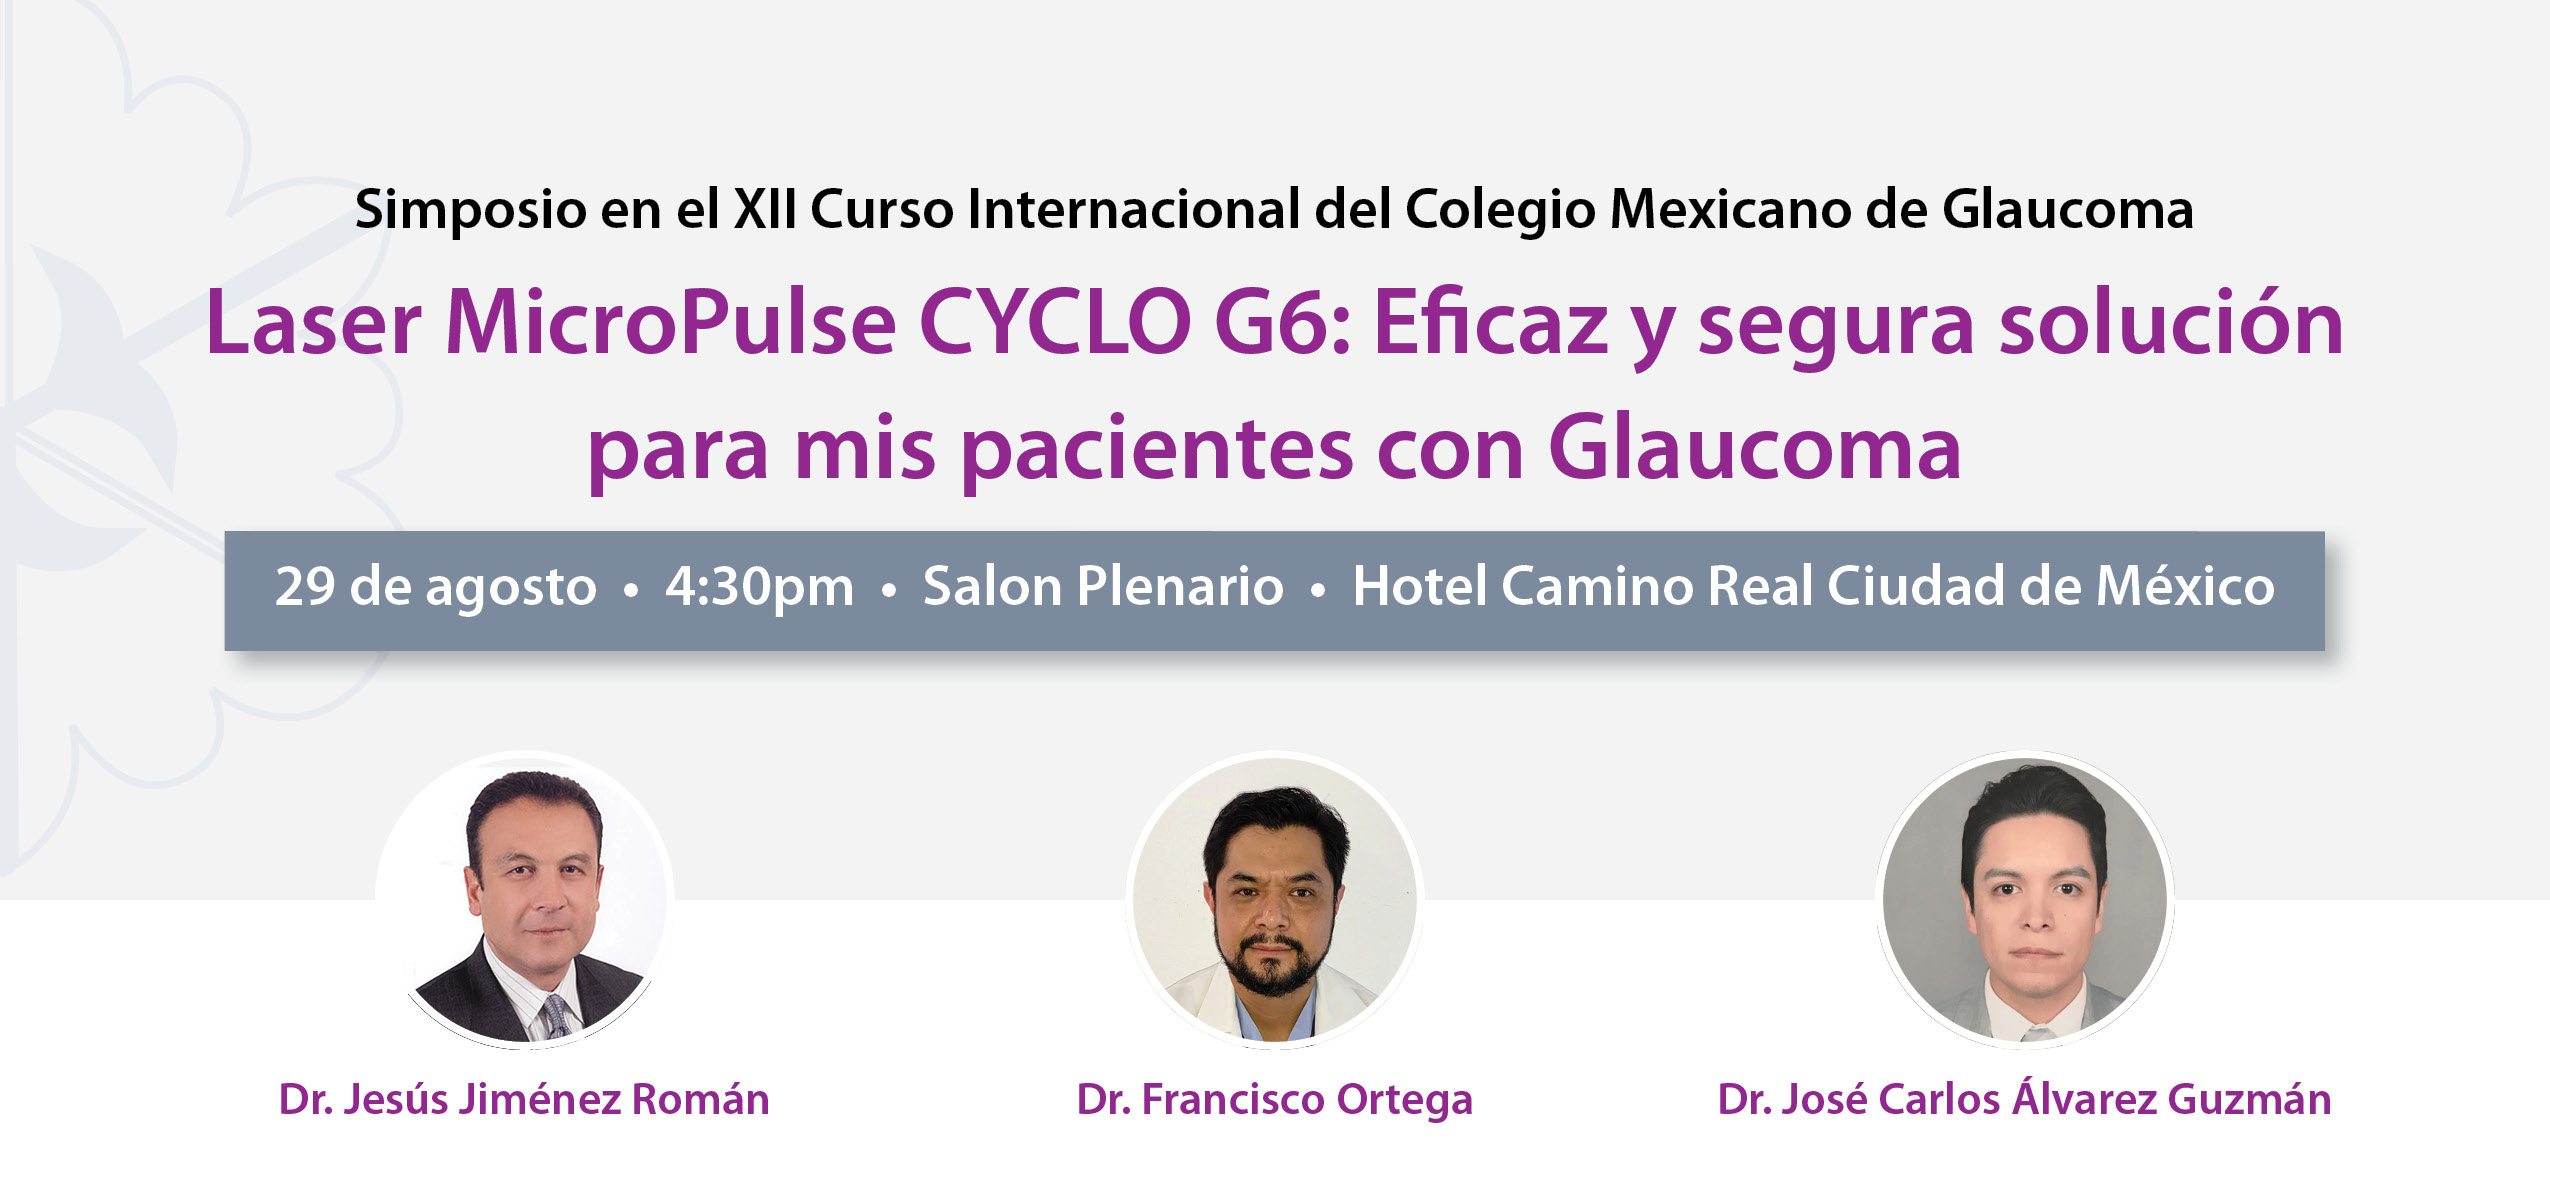 Taller Cyclo G6 en Colegio Mexicano de Glaucoma